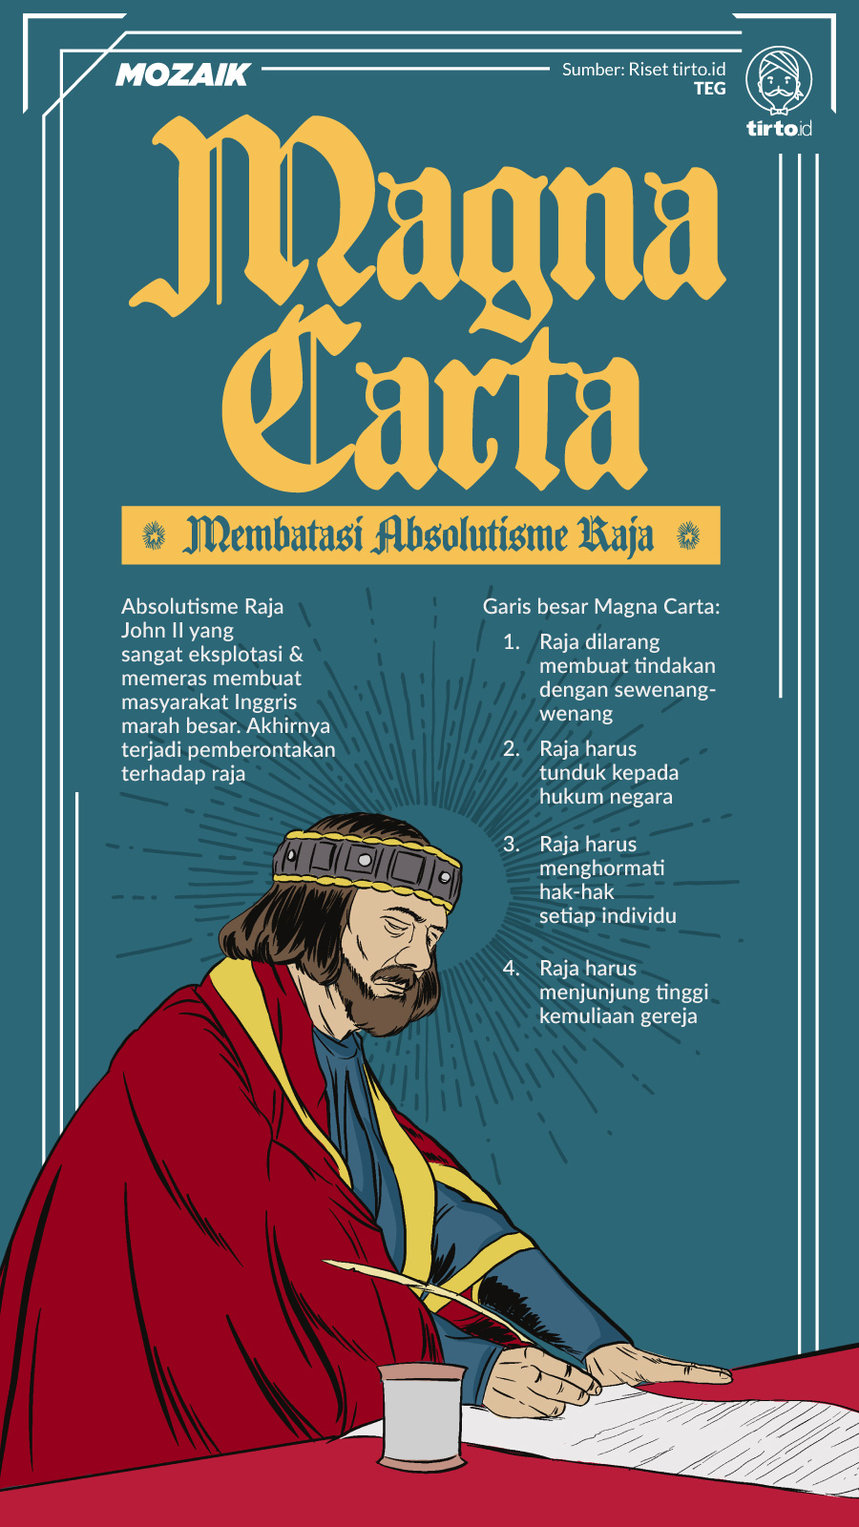 Infografik Mozaik Magna Charta